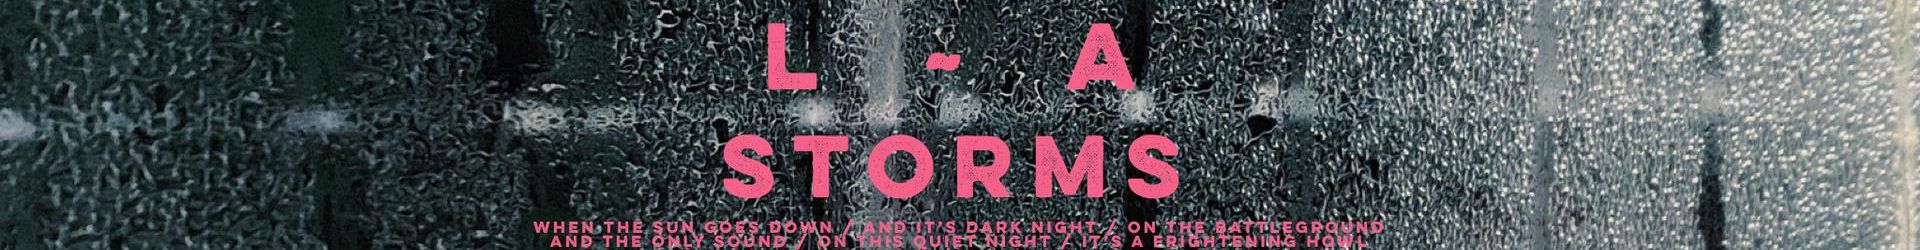 L.A. presenta ‘Storms’ como segundo adelanto de su nuevo disco